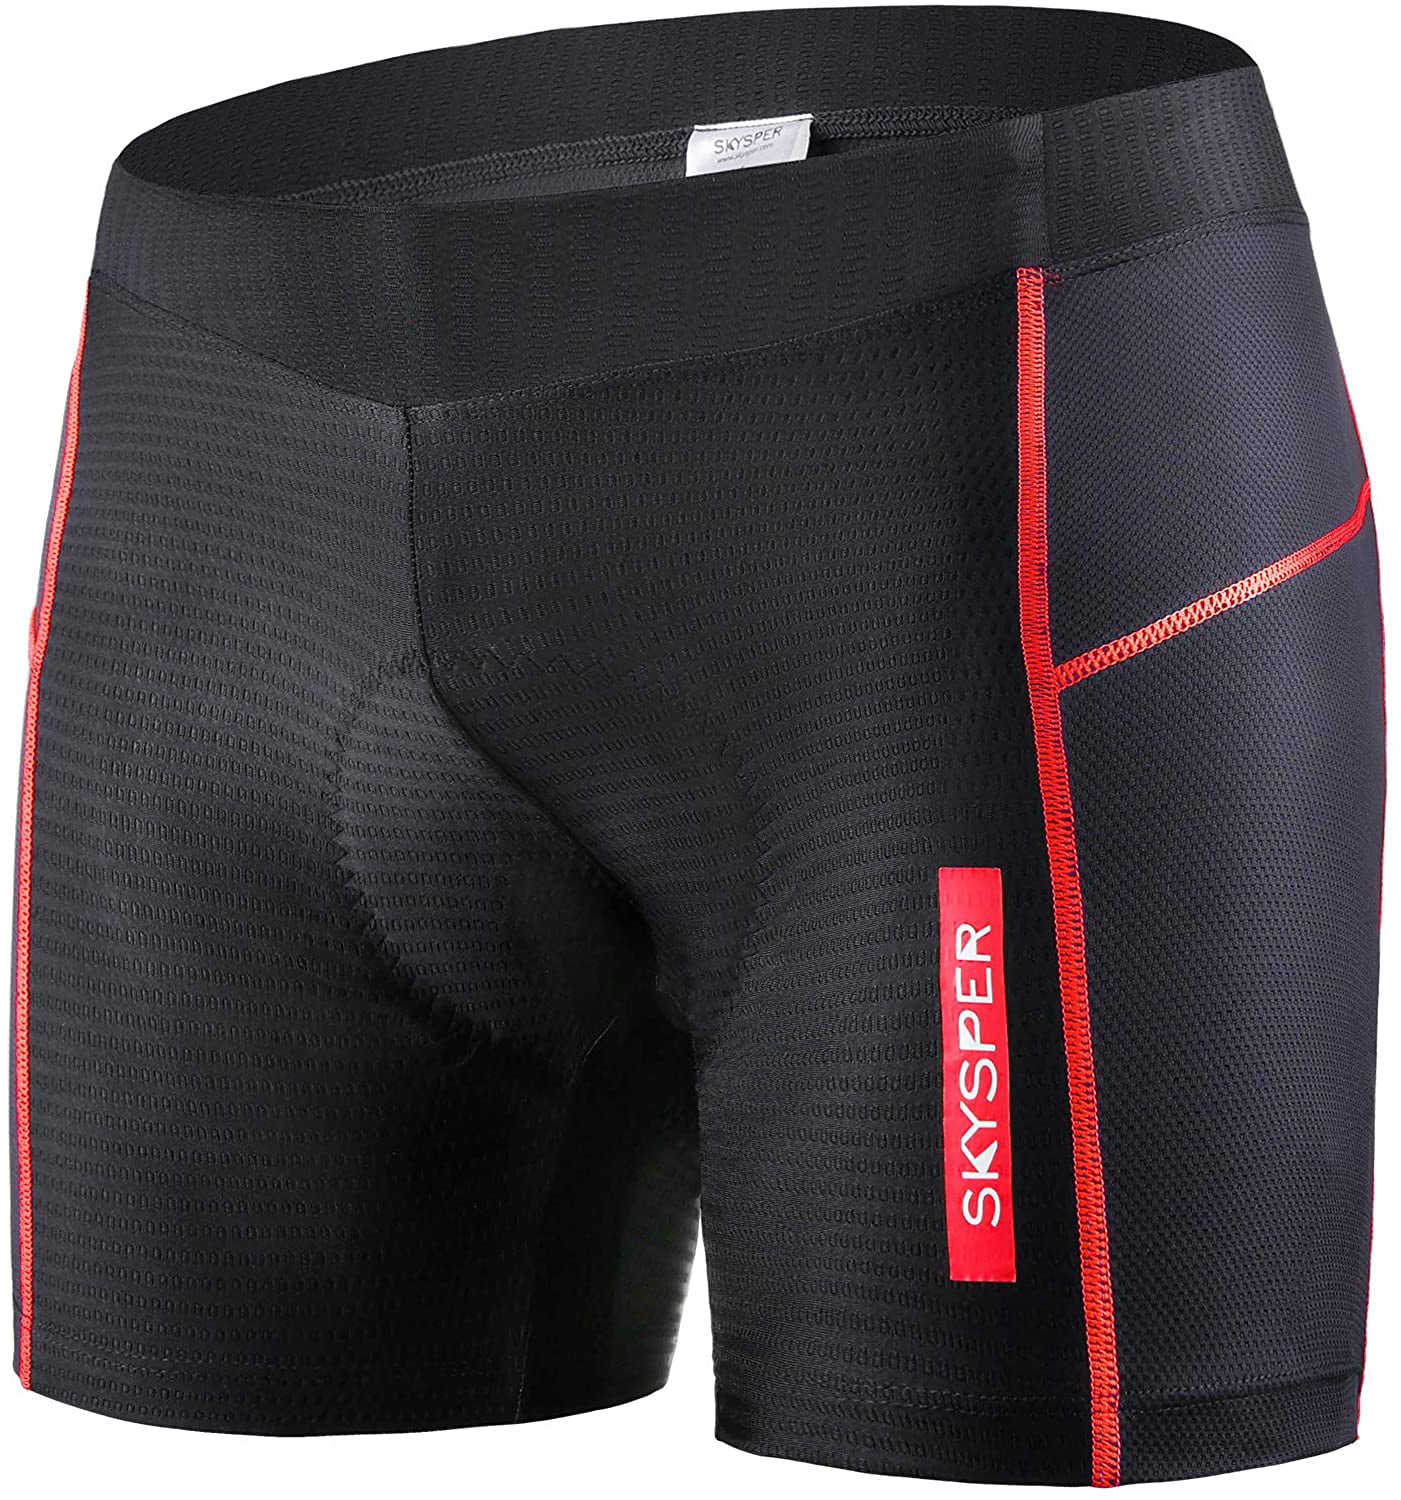 Mens Bike Cycling Underwear Shorts Riding Padded Shorts Pants Bicycle Cushion Pad Breathable 